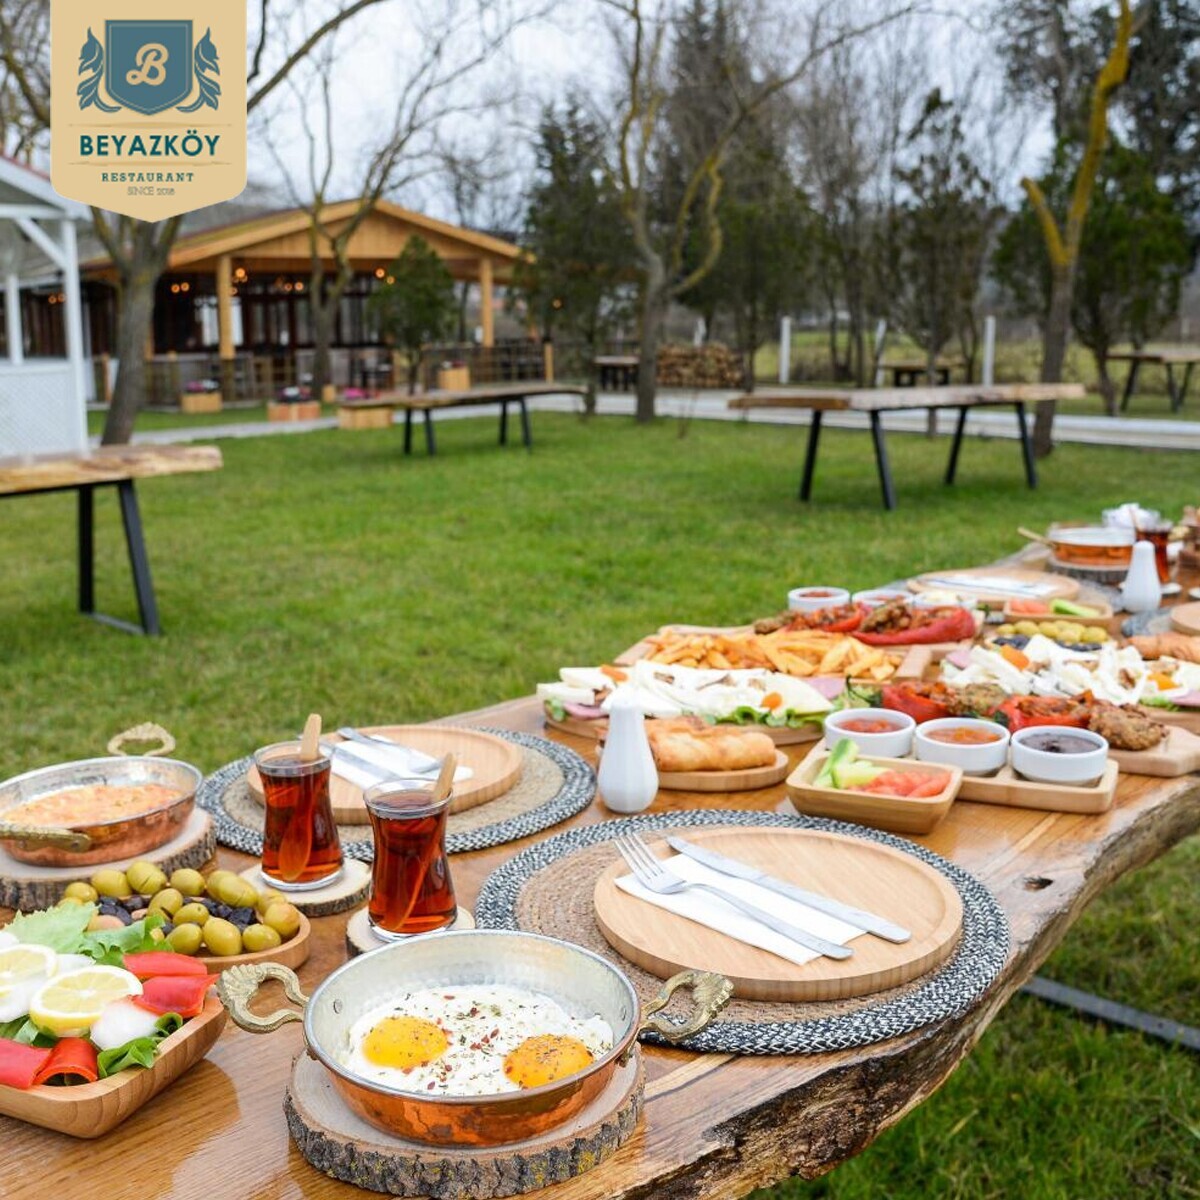 Beykoz Beyazköy'de Sınırsız Çay Eşliğinde Serpme Kahvaltı